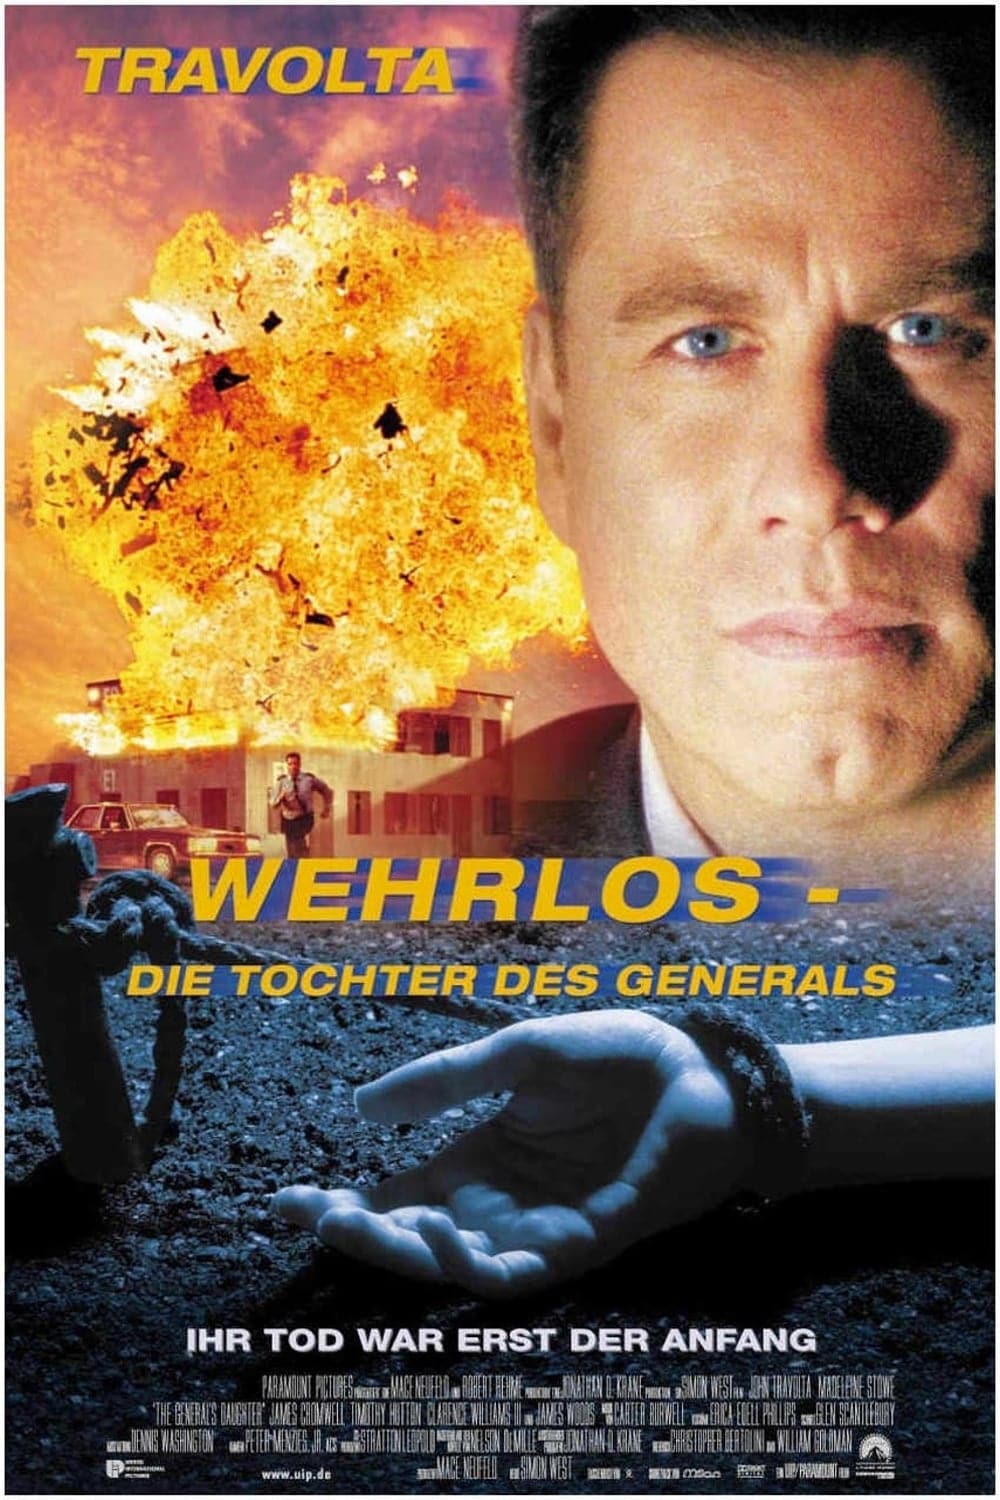 Plakat von "Wehrlos - Die Tochter des Generals"